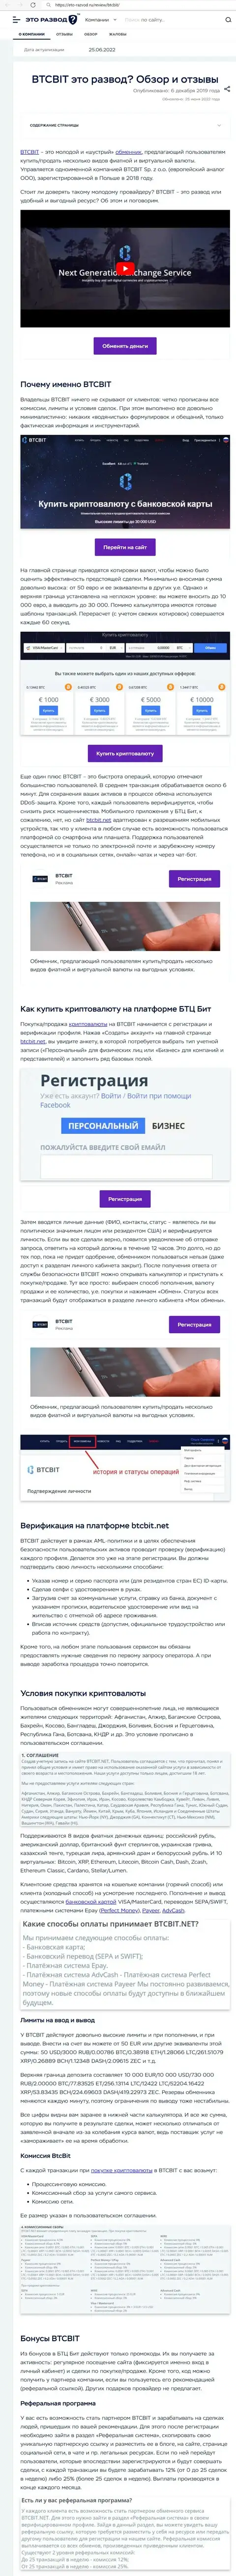 Обзор деятельности и условия совершения операций обменника BTCBit в обзорной статье на онлайн-сервисе Eto Razvod Ru